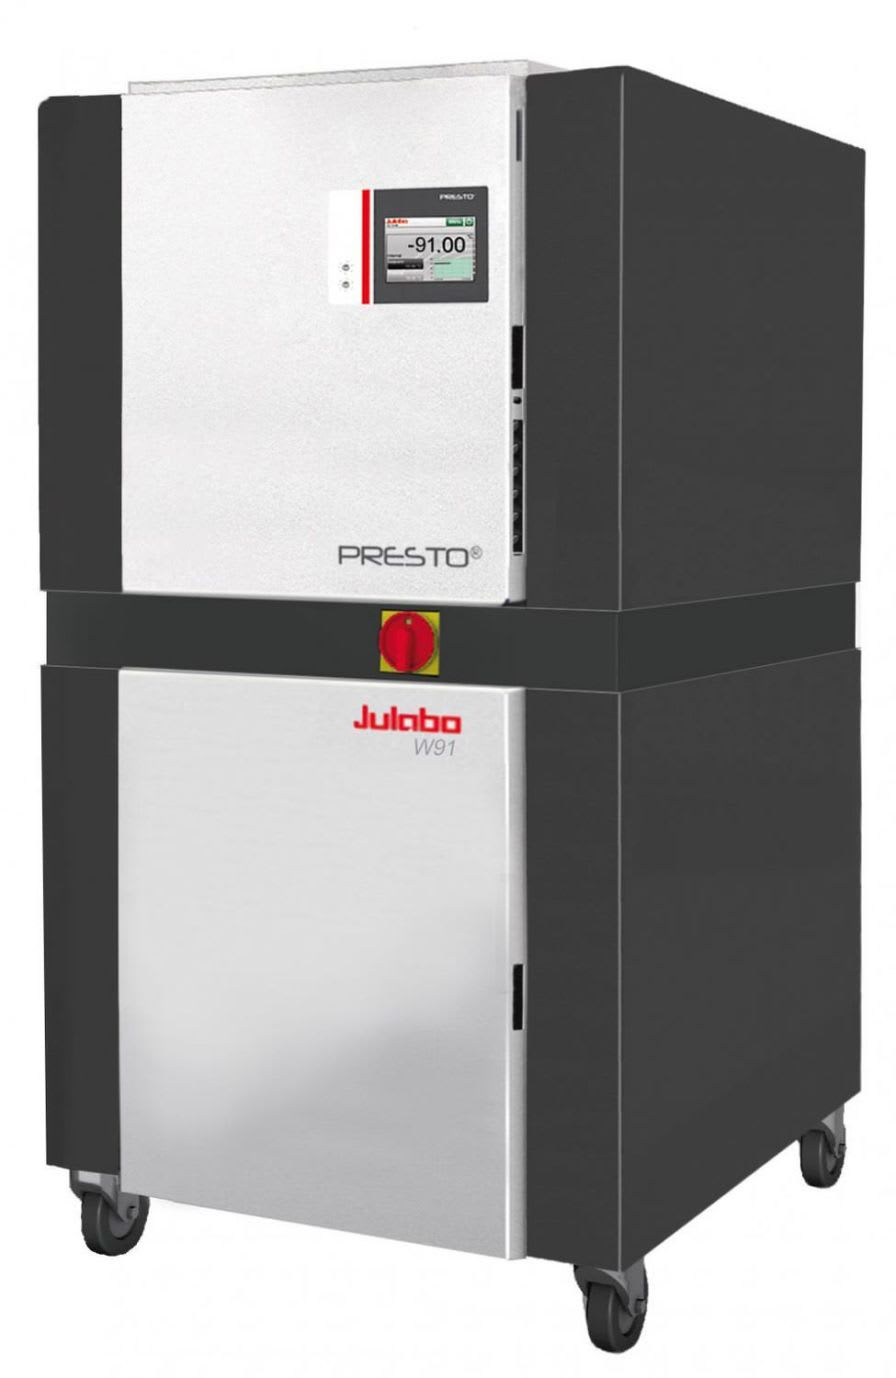 Laboratory thermostat / process -91 °C ... +250 °C | PRESTO® W91x Julabo